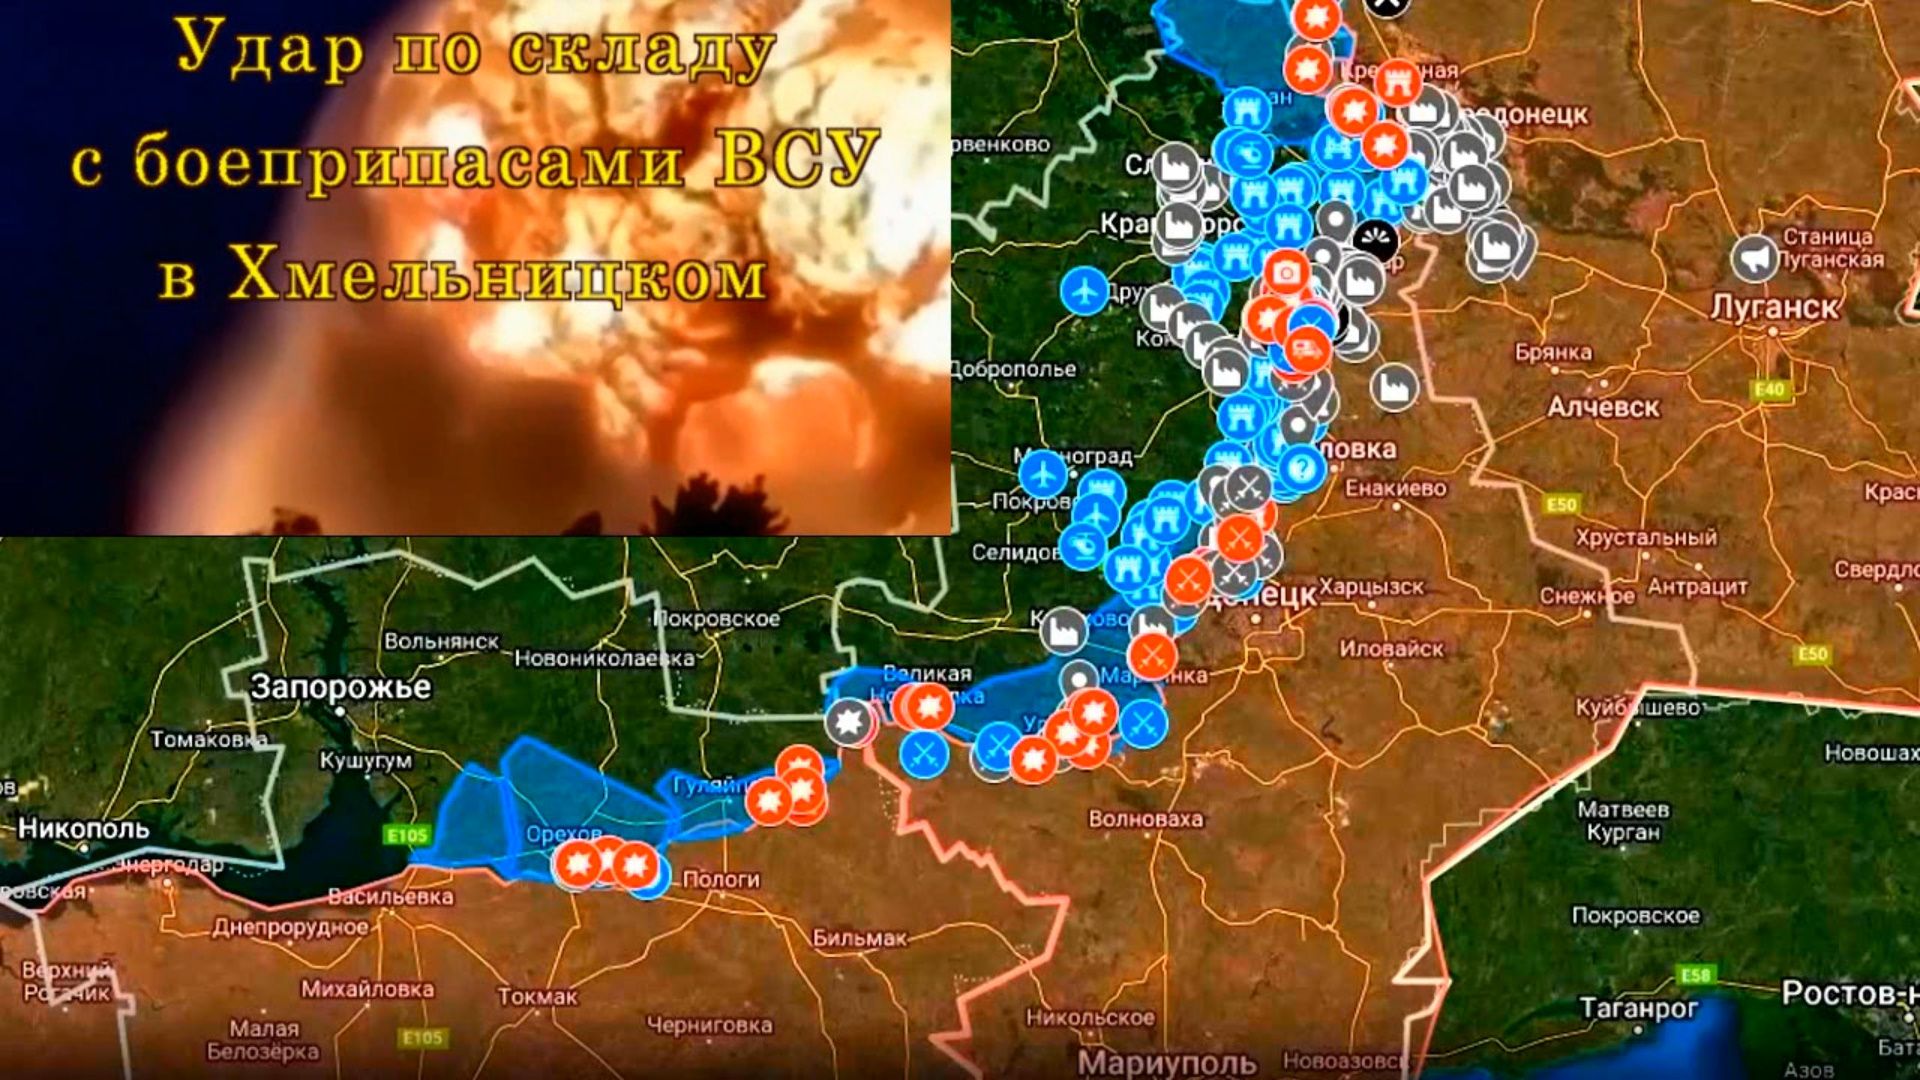 Боевые действия сегодня рутубе. Карта боевых действий на Украине. Карта военных действий на Украине сегодня. Карта боев на Украине. Карта боевых действий на Украине на сегодня.